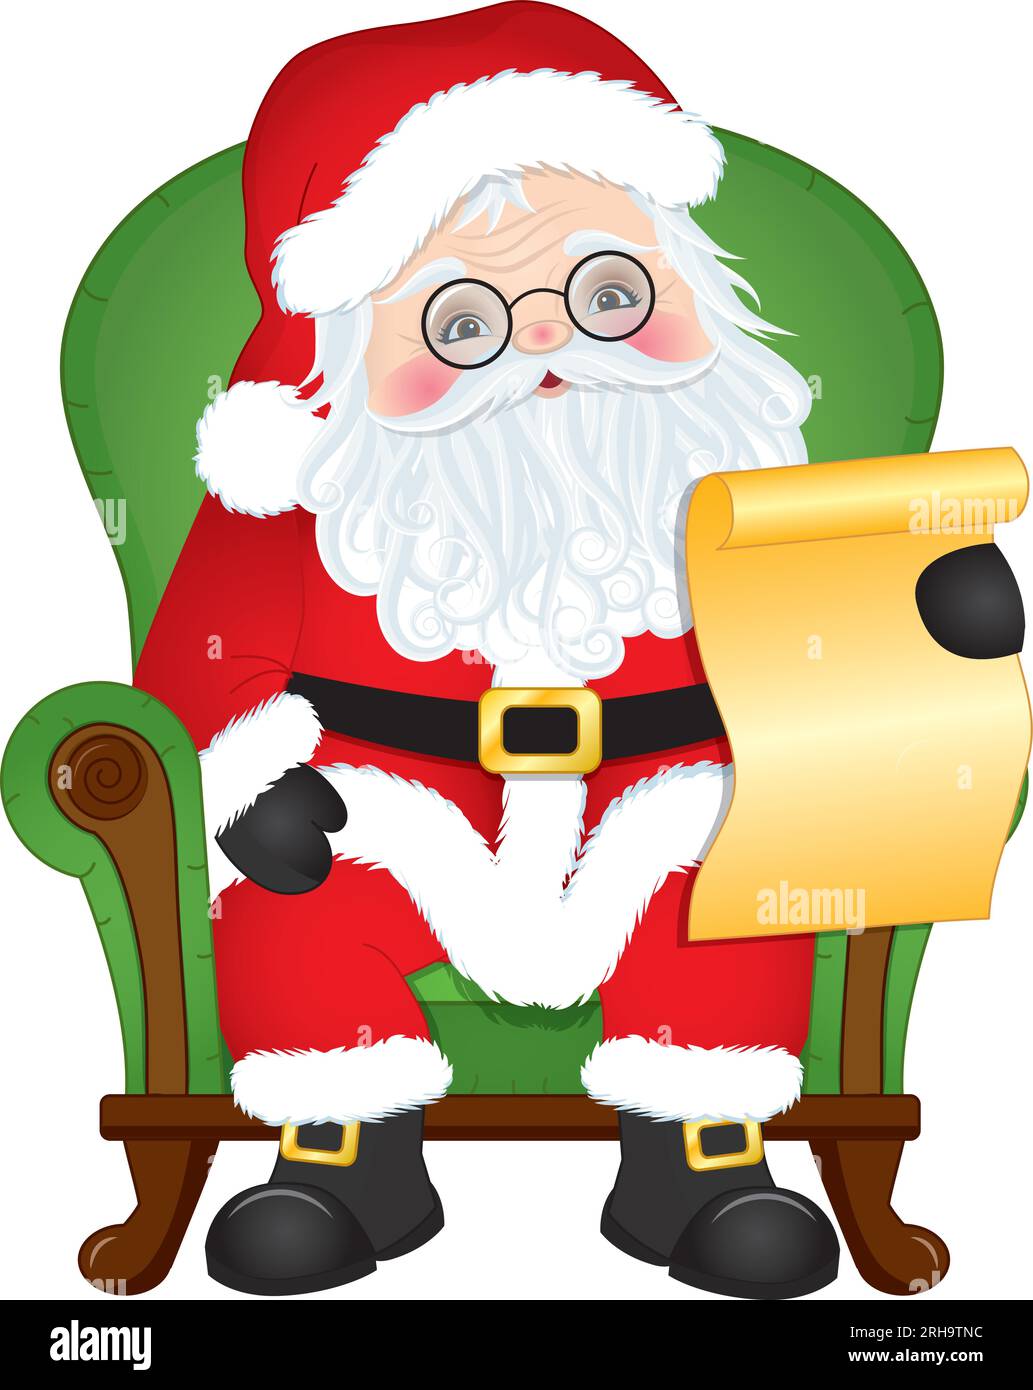 Image de dessin animé vectoriel du Père Noël lisant la lettre Illustration de Vecteur